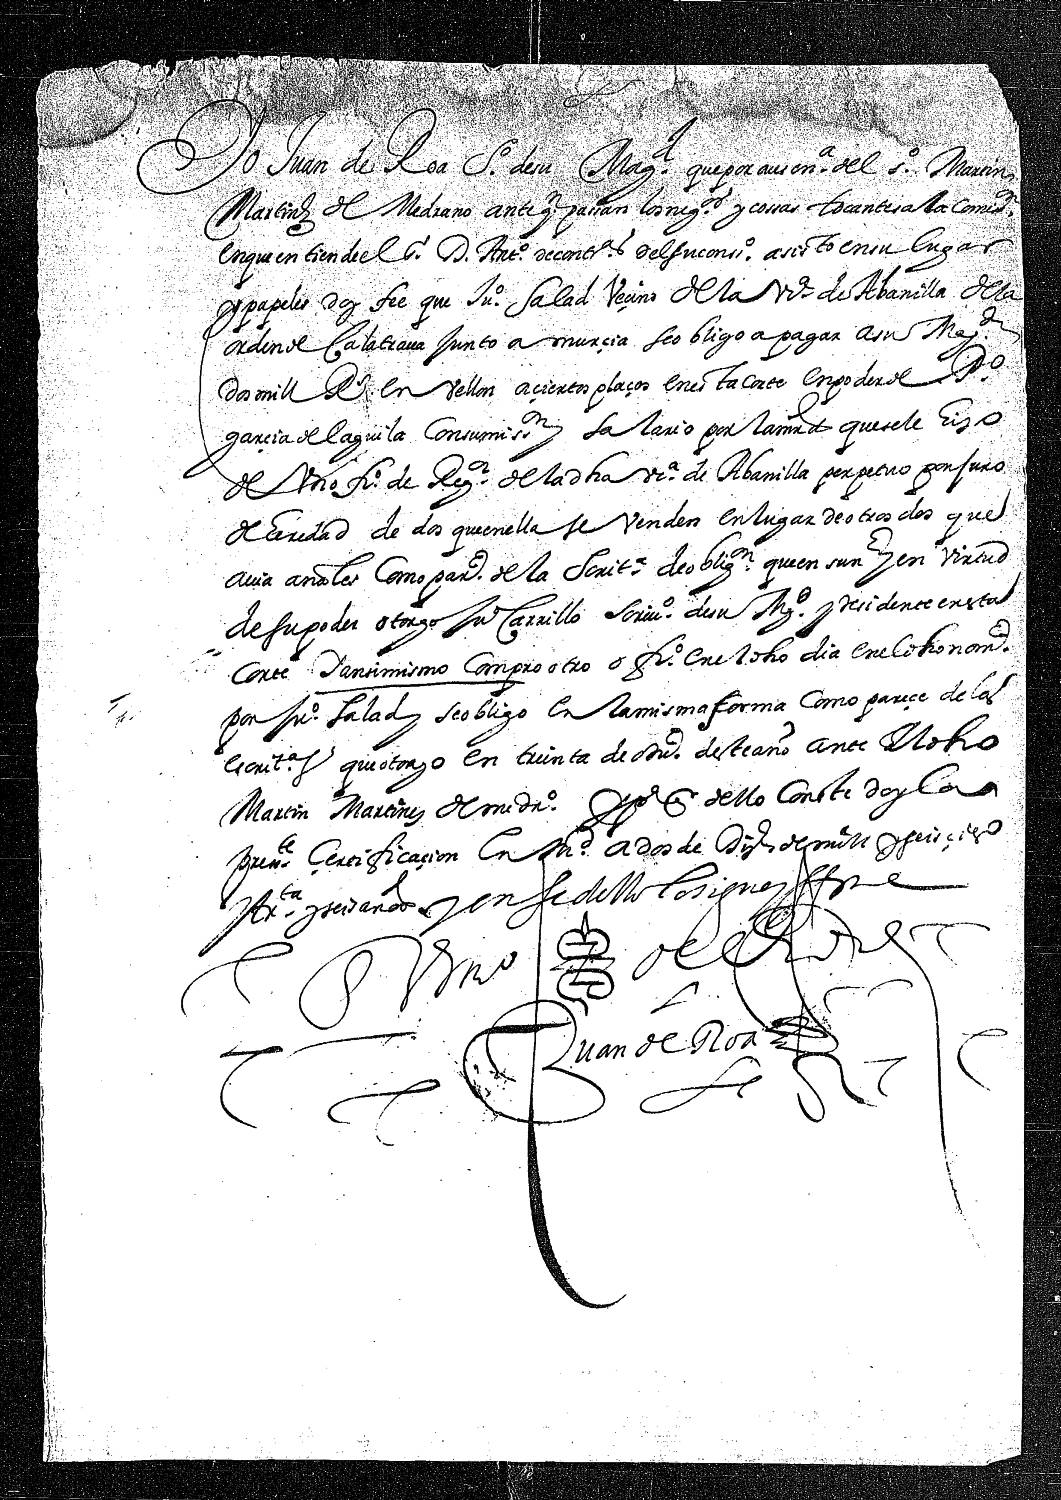 Certificación notarial dando fe que Juan Salad, vecino de Abanilla, se obligó a pagar al rey 2000 reales de vellón en ciertos plazos por el oficio de regidor pepetuo.